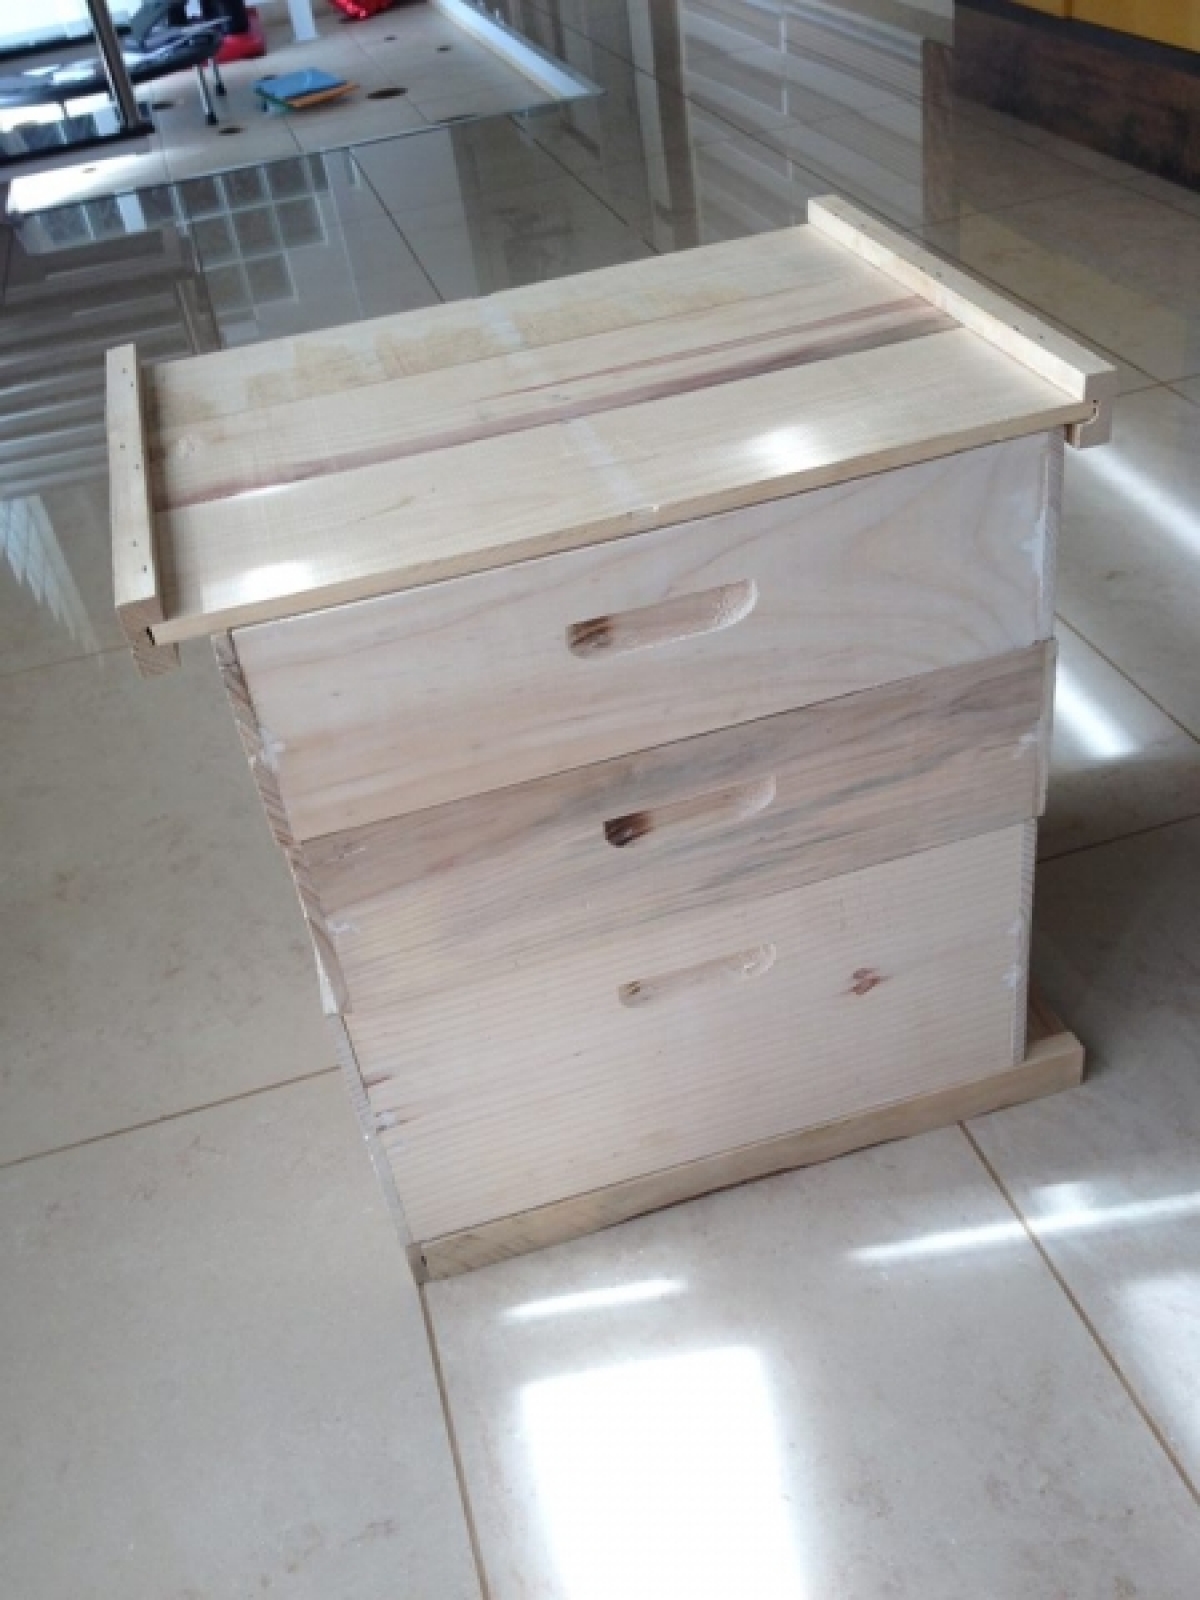 Vendo fabrica de caixas para apicultura